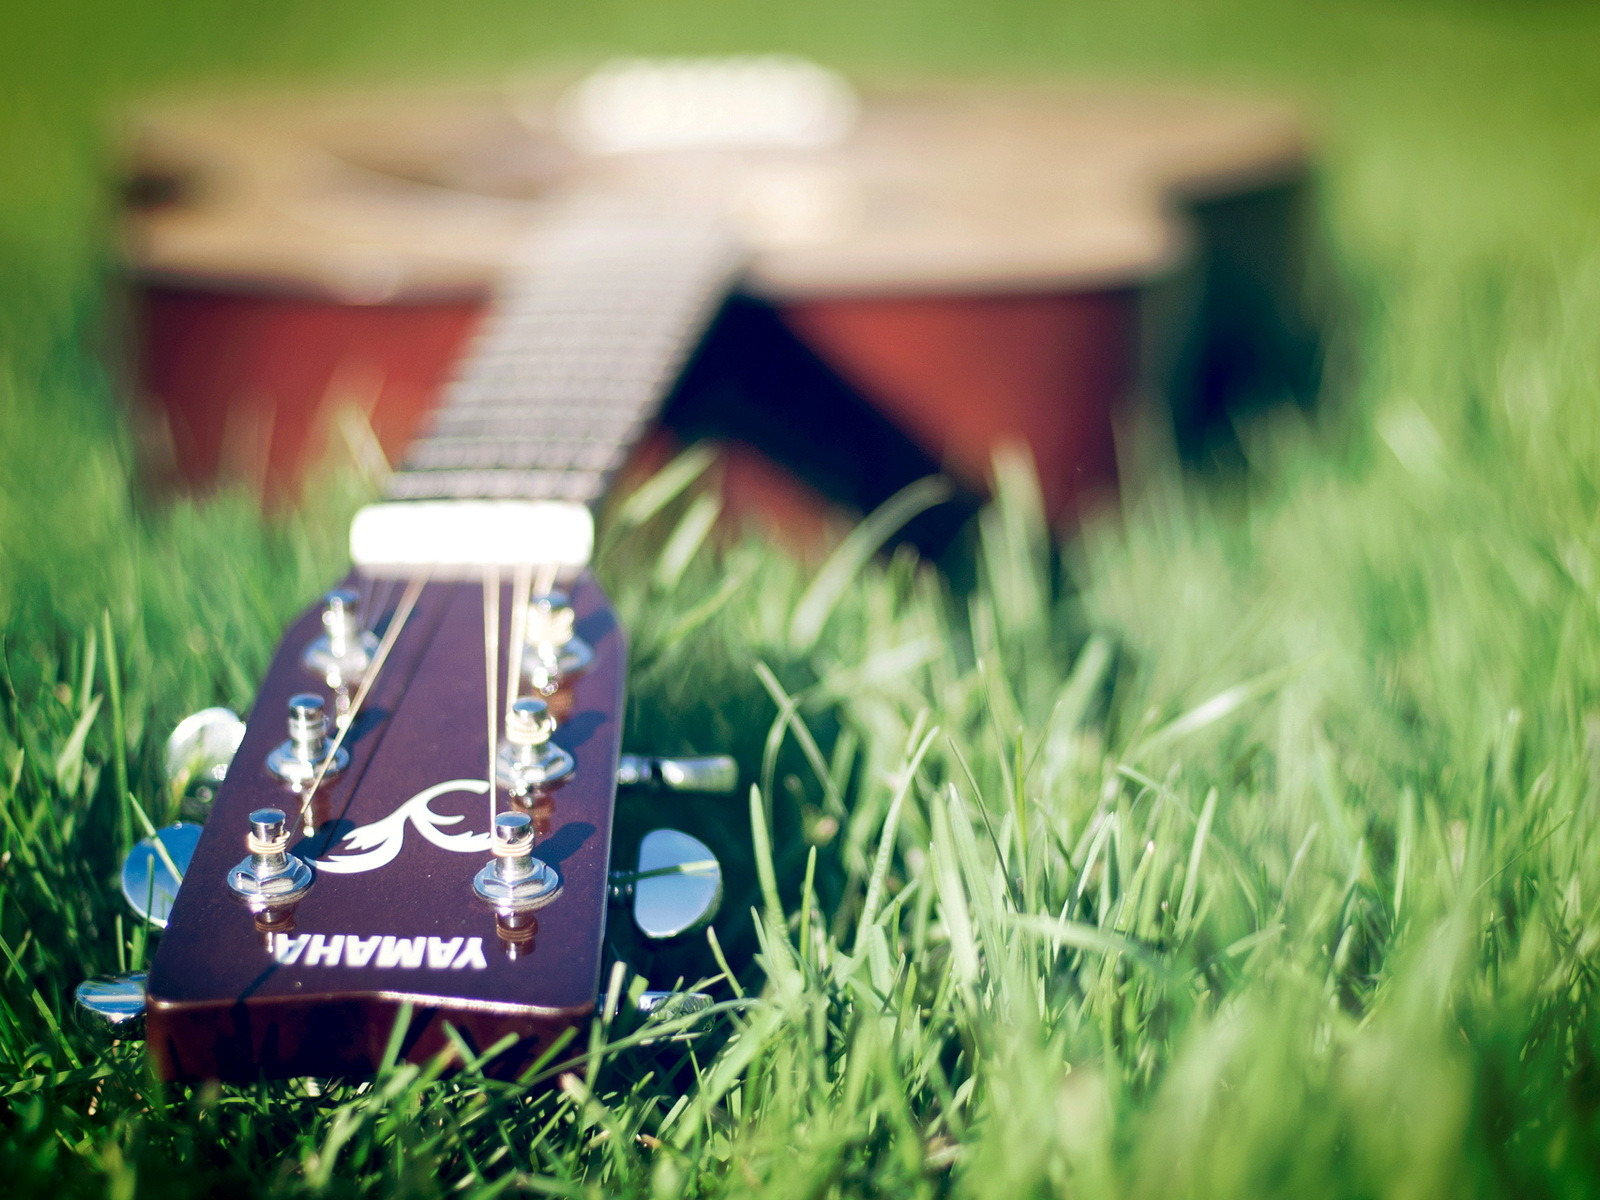 Сыграть на гитаре в траве. Гитарный клуб. Гитара обои на телефон высокого качества на поле. Мелодия травы. Обои на рабочий стол 1280x1024.